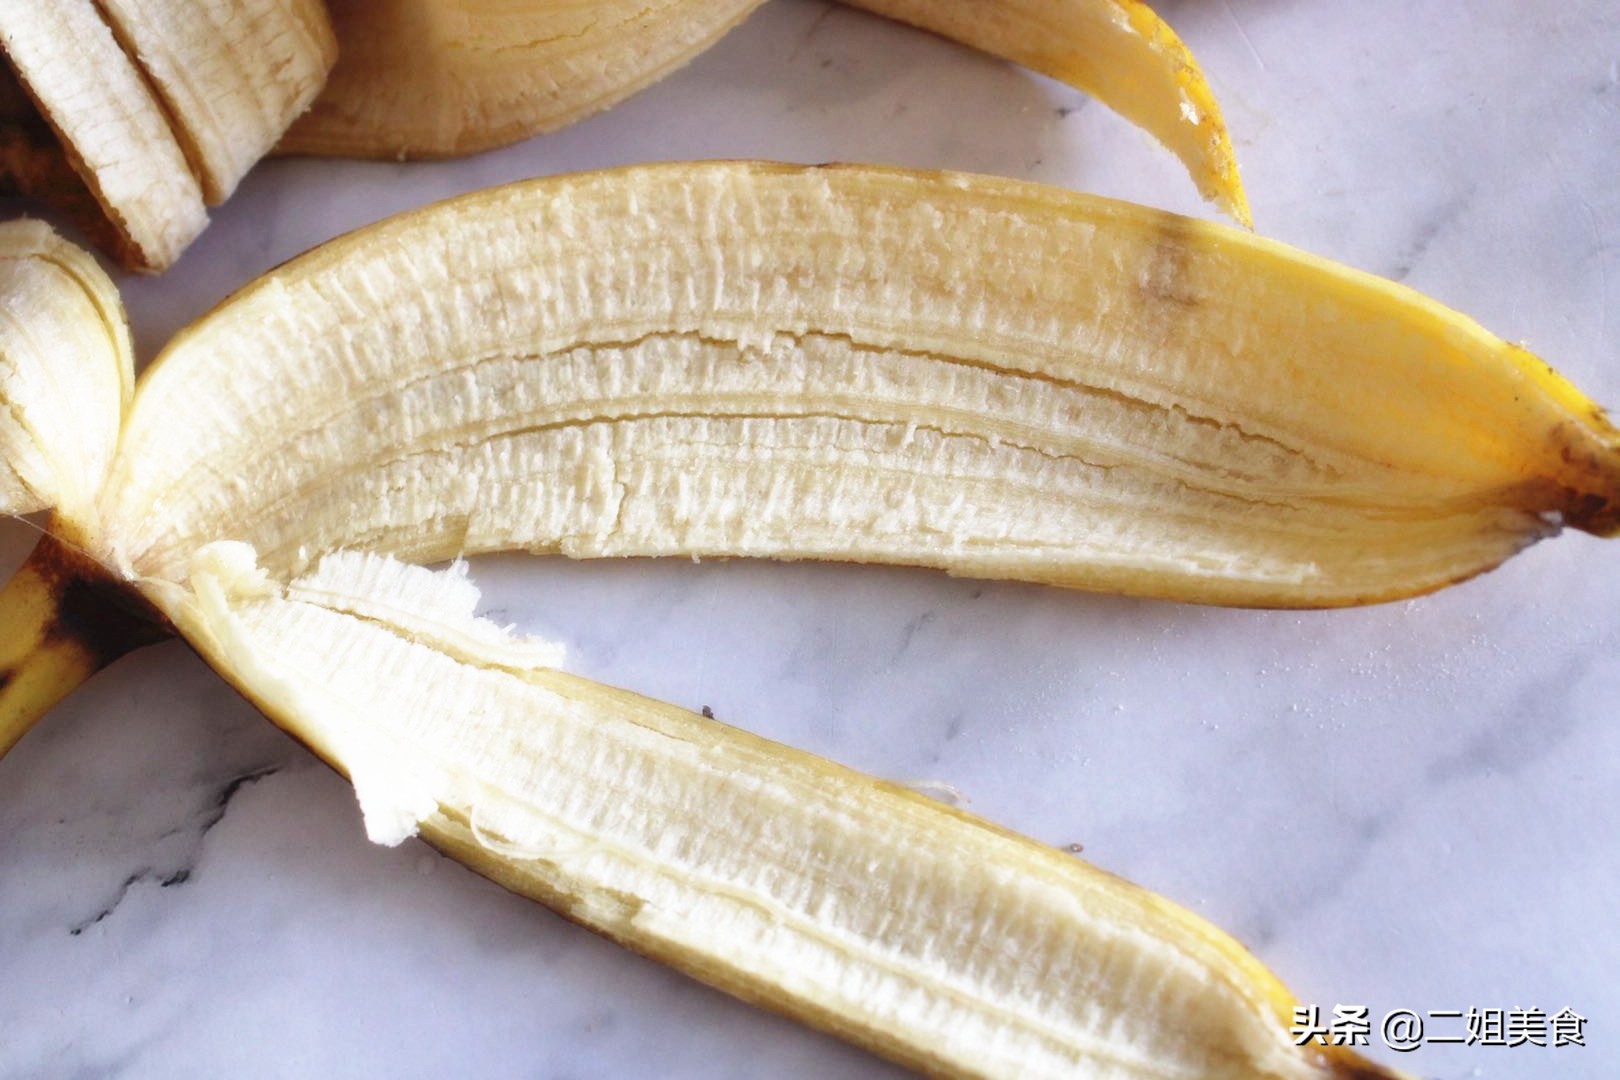 香蕉皮是好寶貝，別再扔掉了，教您香蕉皮的3個用法，簡單實用